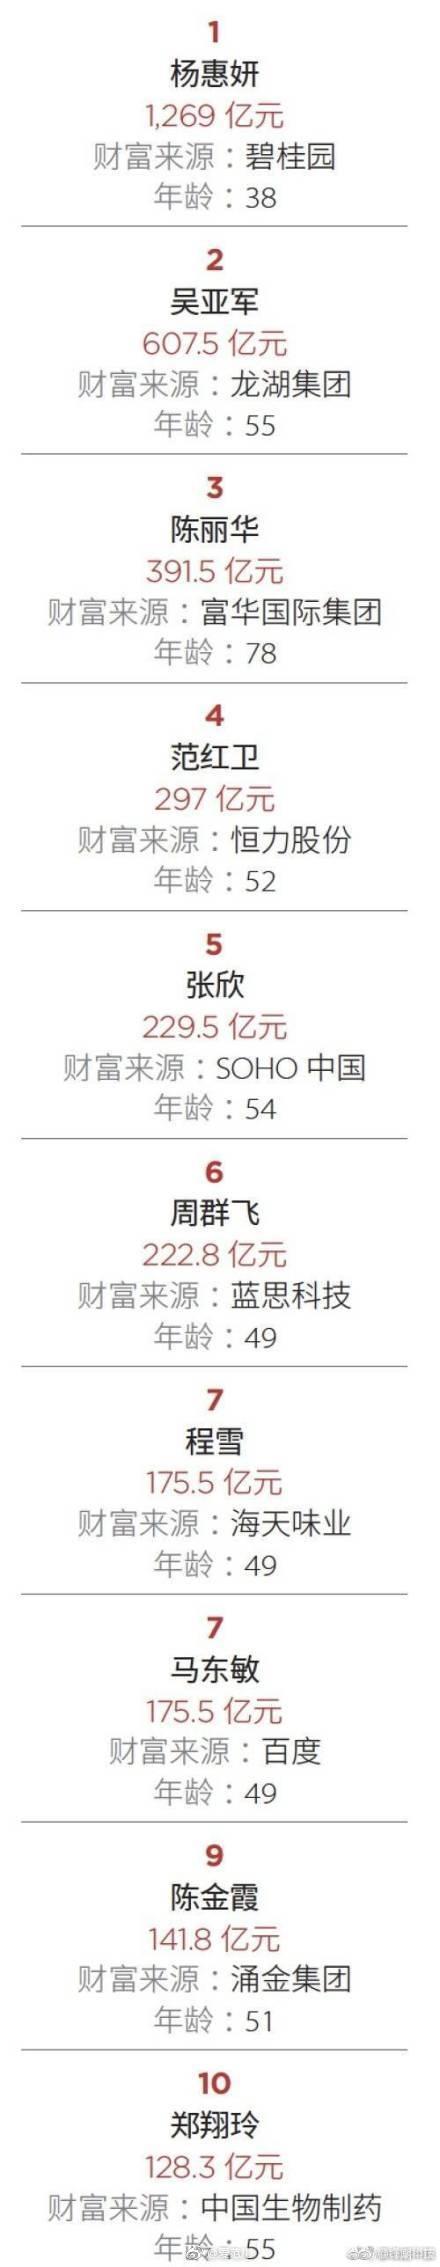 福布斯中国发布2019最富有女性榜，碧桂园副主席排名第一